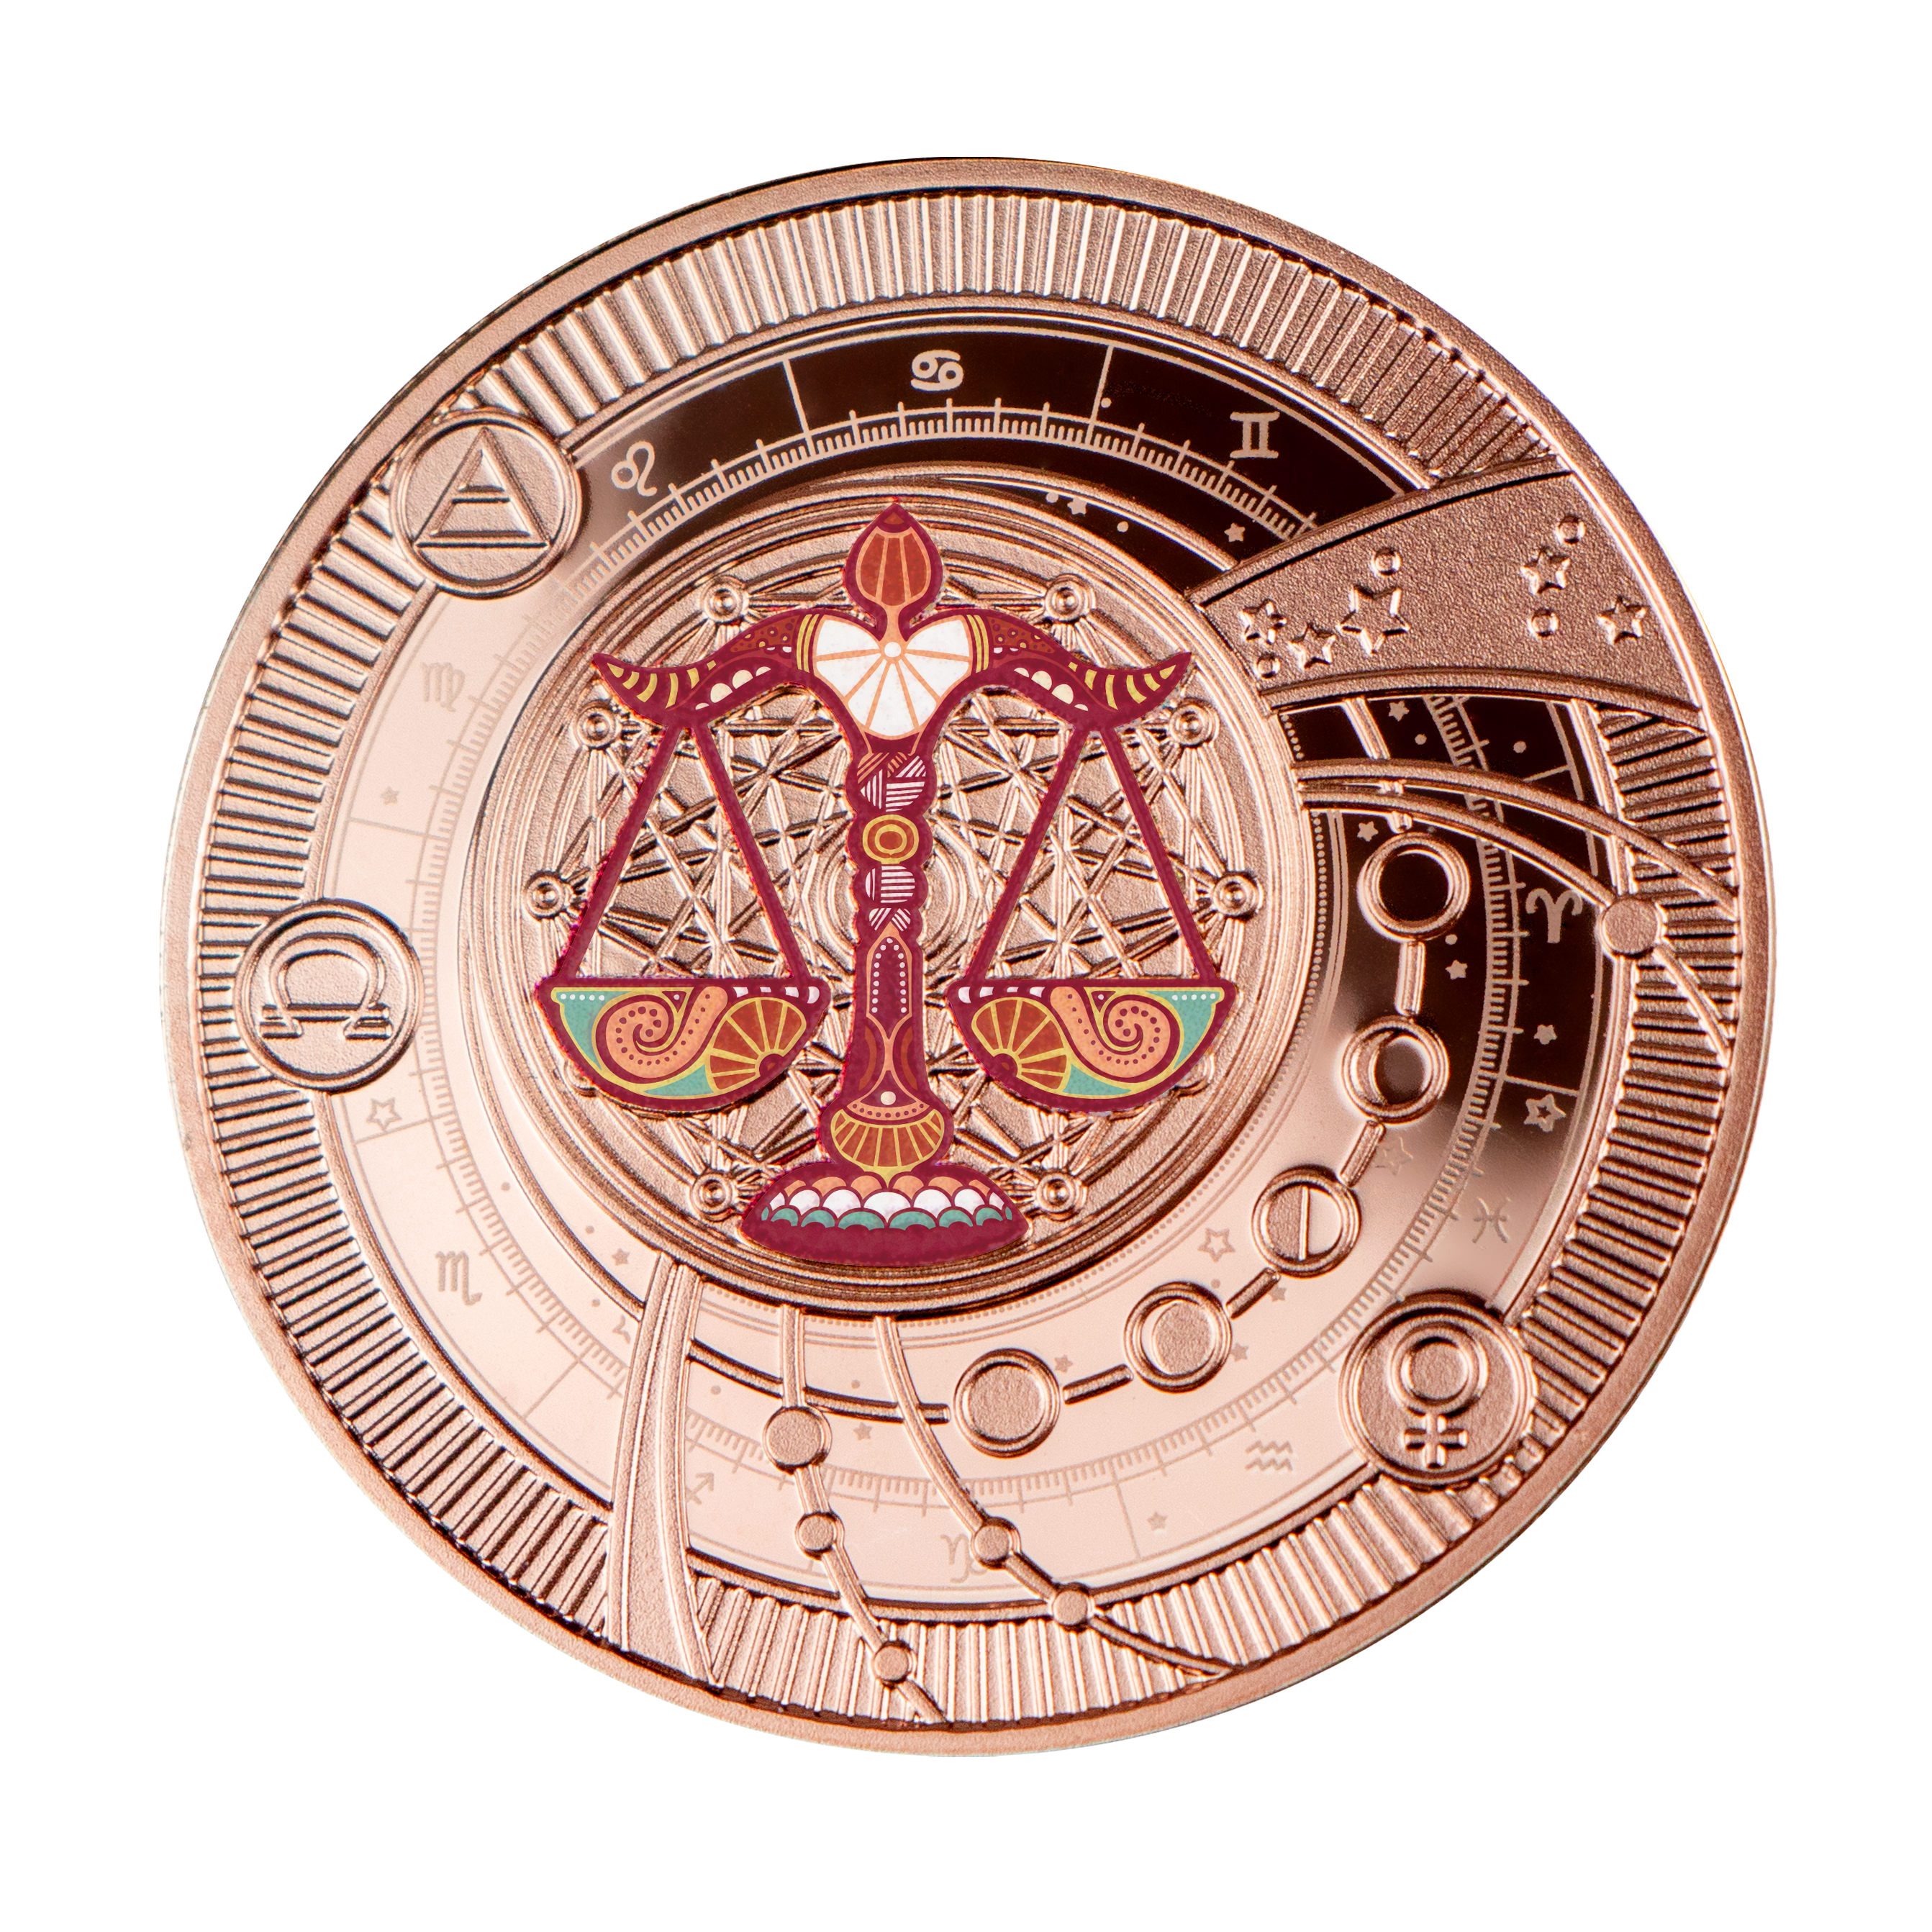 Монеты мира: Каталог иностранных монет от MTB БАНК - фото 58 - mtb.ua